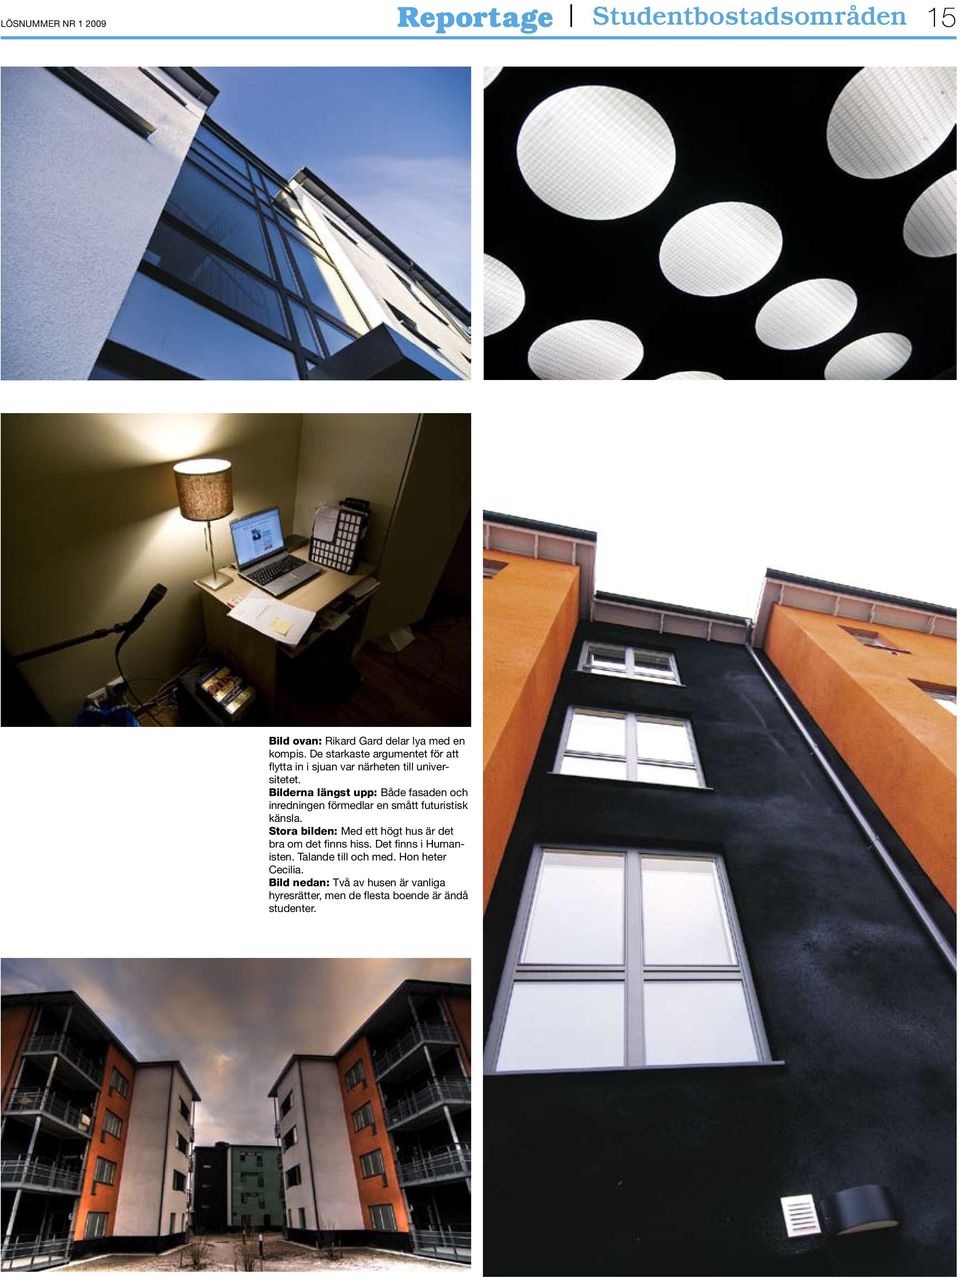 Bilderna längst upp: Både fasaden och inredningen förmedlar en smått futuristisk känsla.